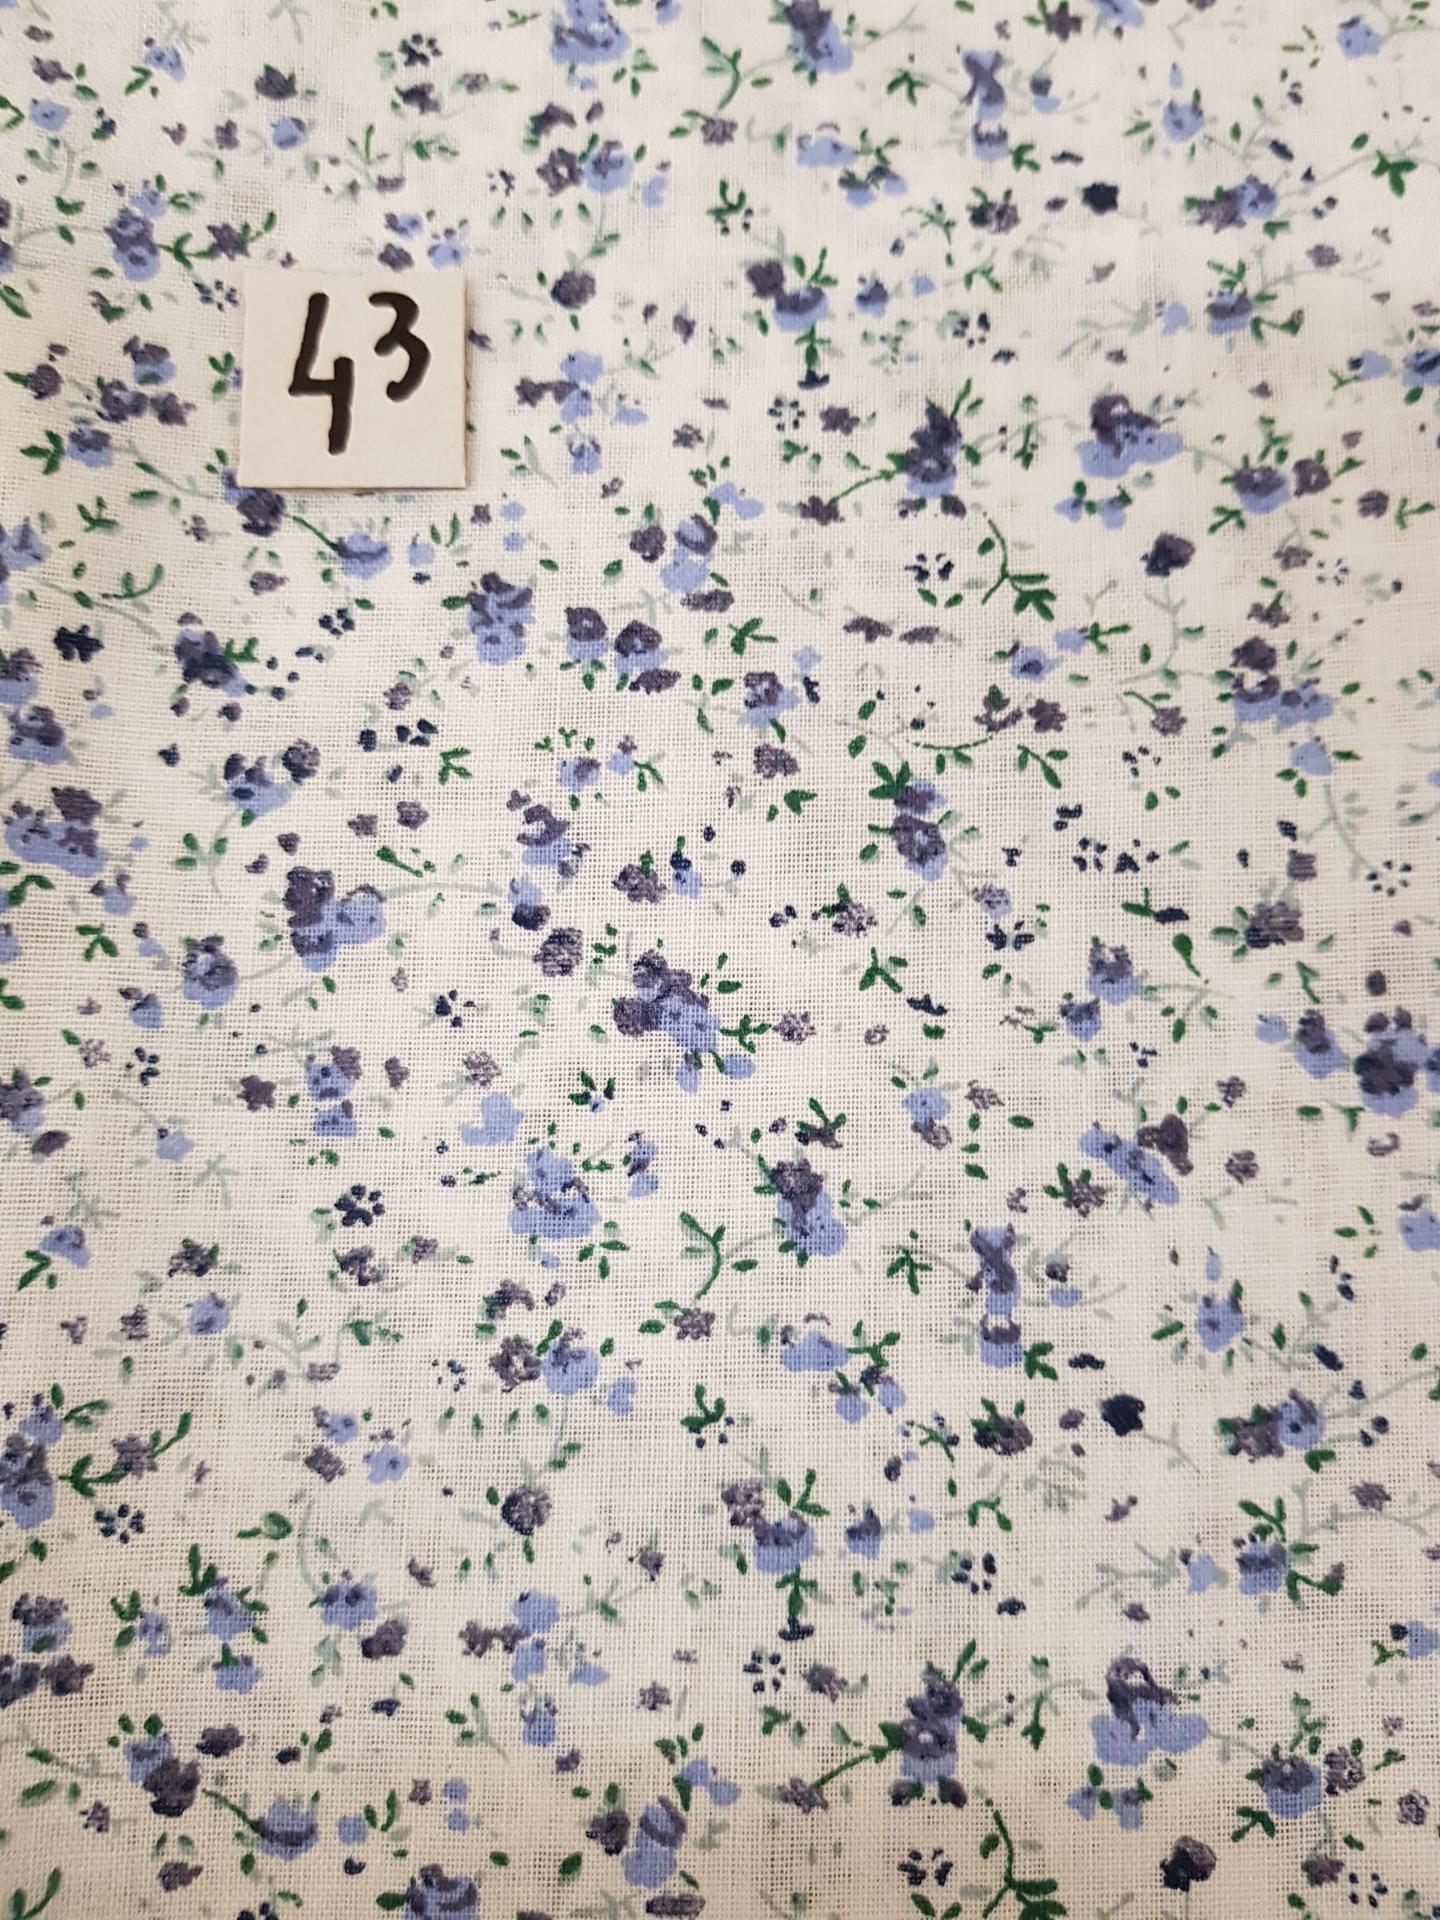 43 tissus lingettes fleurs bleu 43